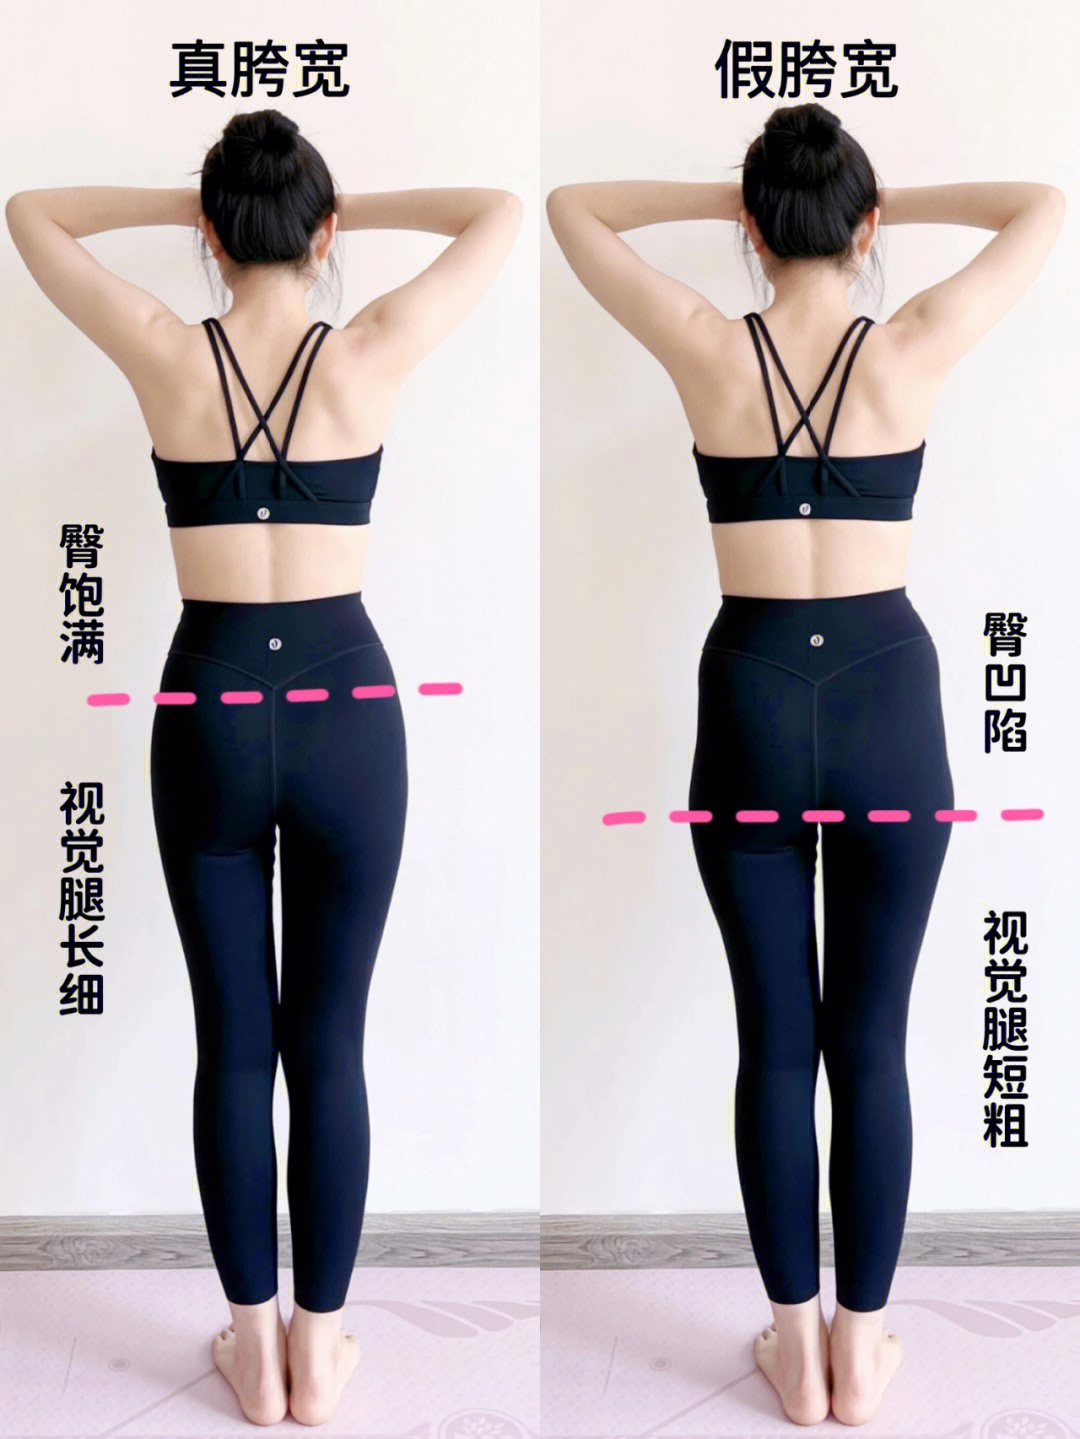 假胯宽一般都伴随着臀部两侧凹陷无力,侧腰赘肉,大腿根部外凸,不仅